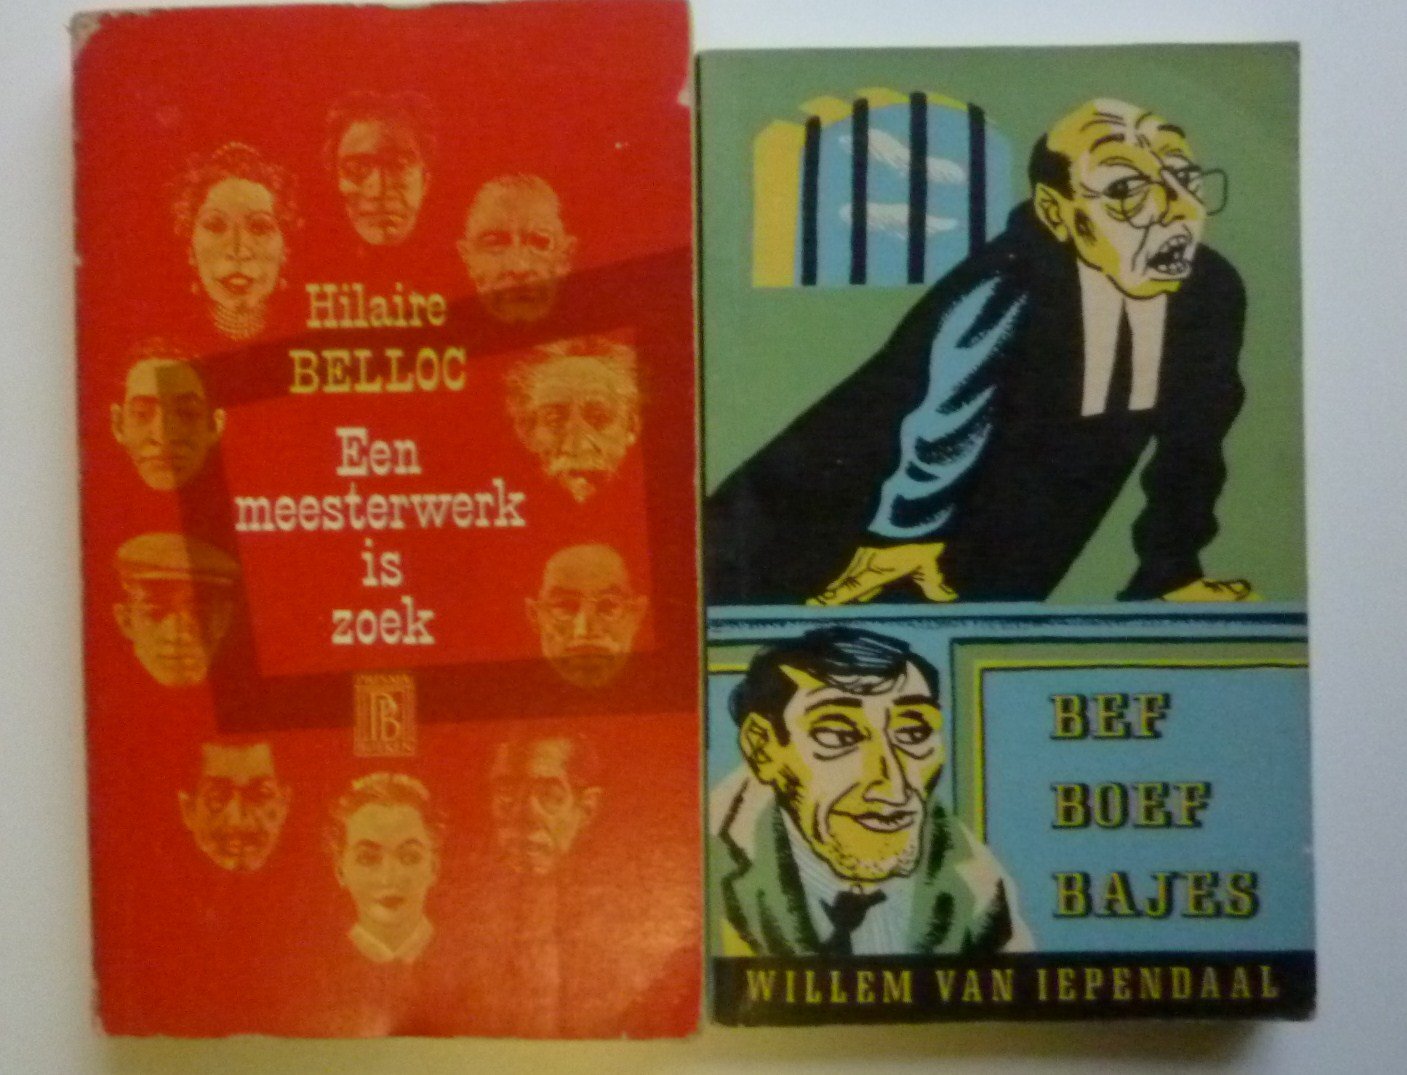 Belloc Hilaire + Willem van Iependaal - Een meesterwerk is zoek + Bef Boef Bajes